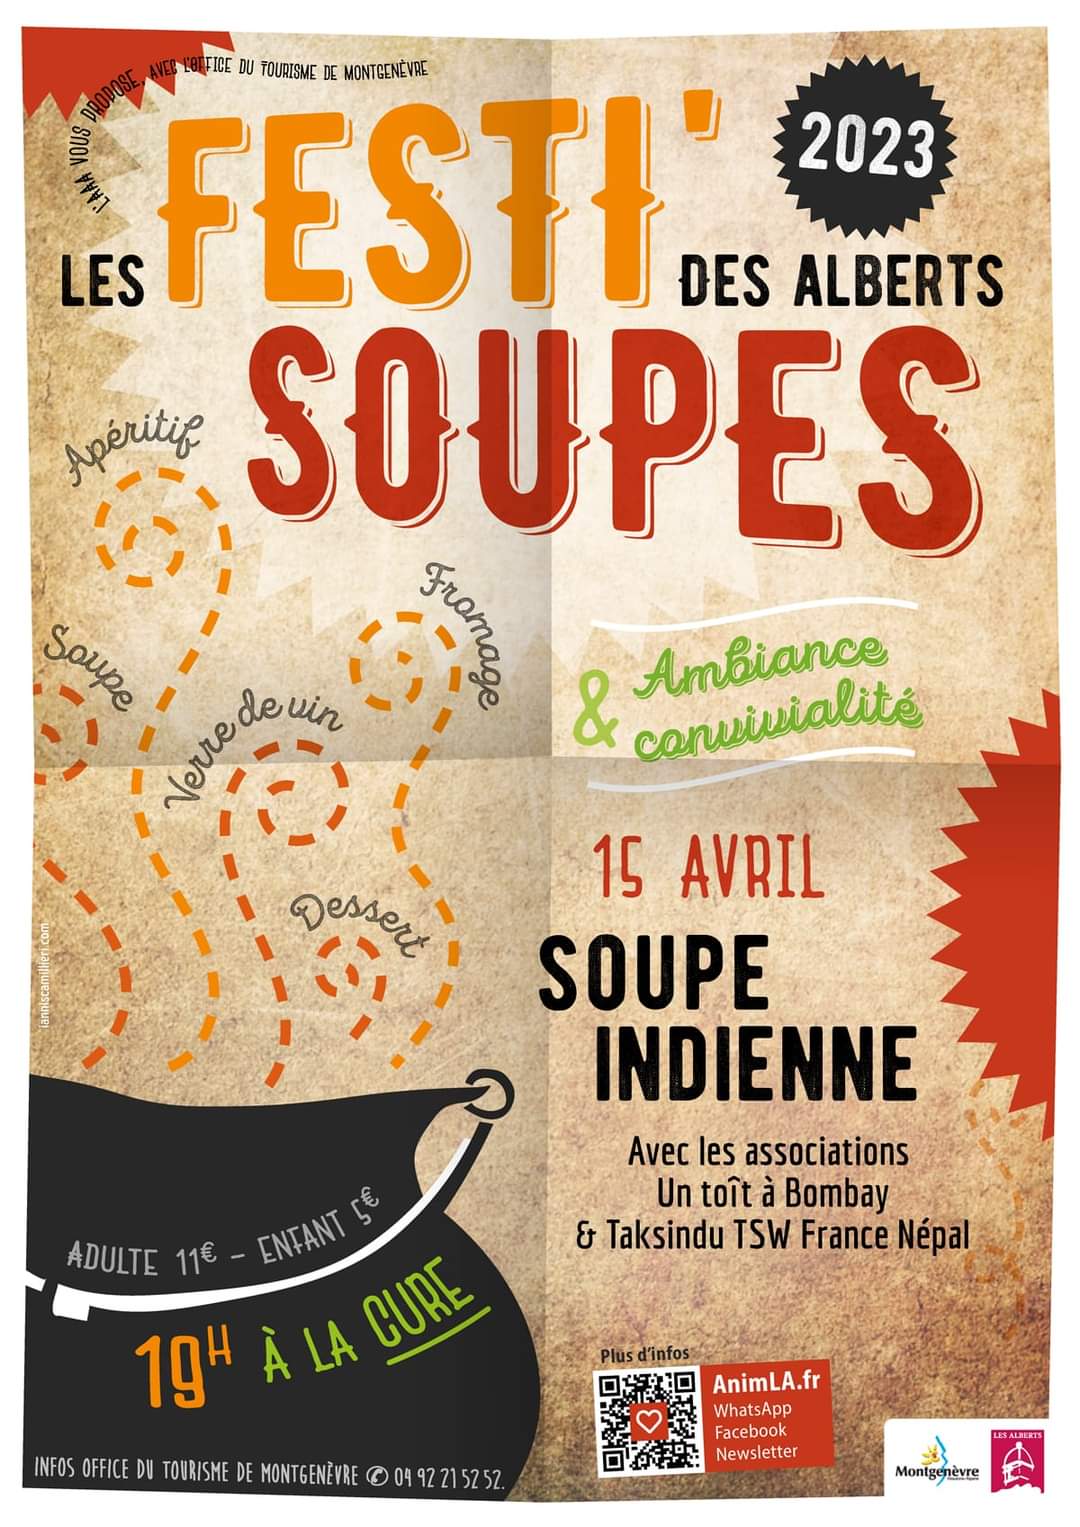 une Festi'soupe indienne au profit de 2 associations !